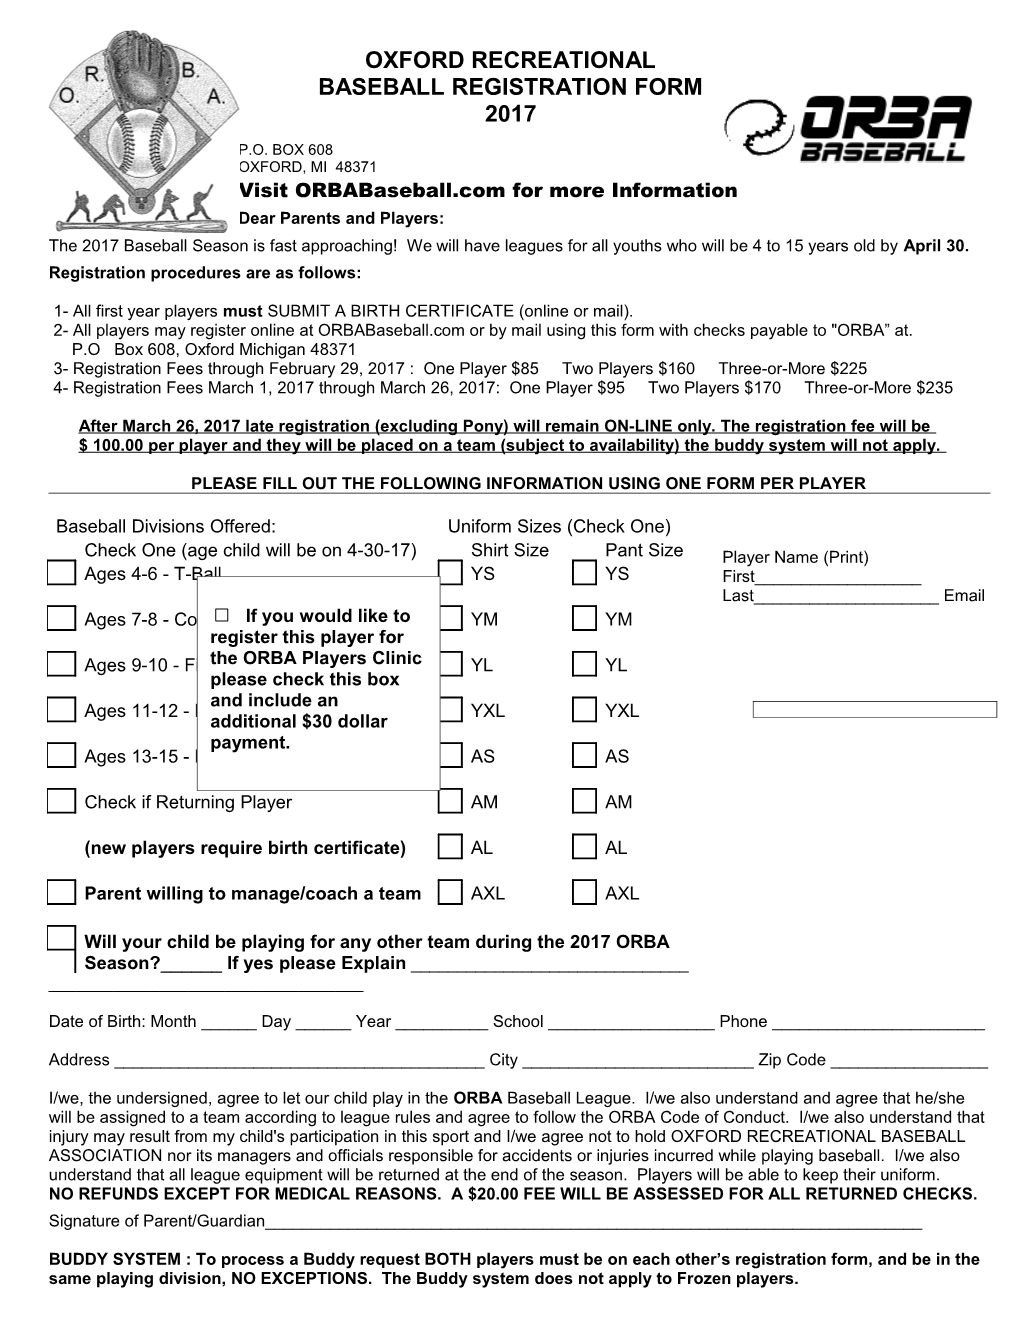 2011 ORBA Registration Form